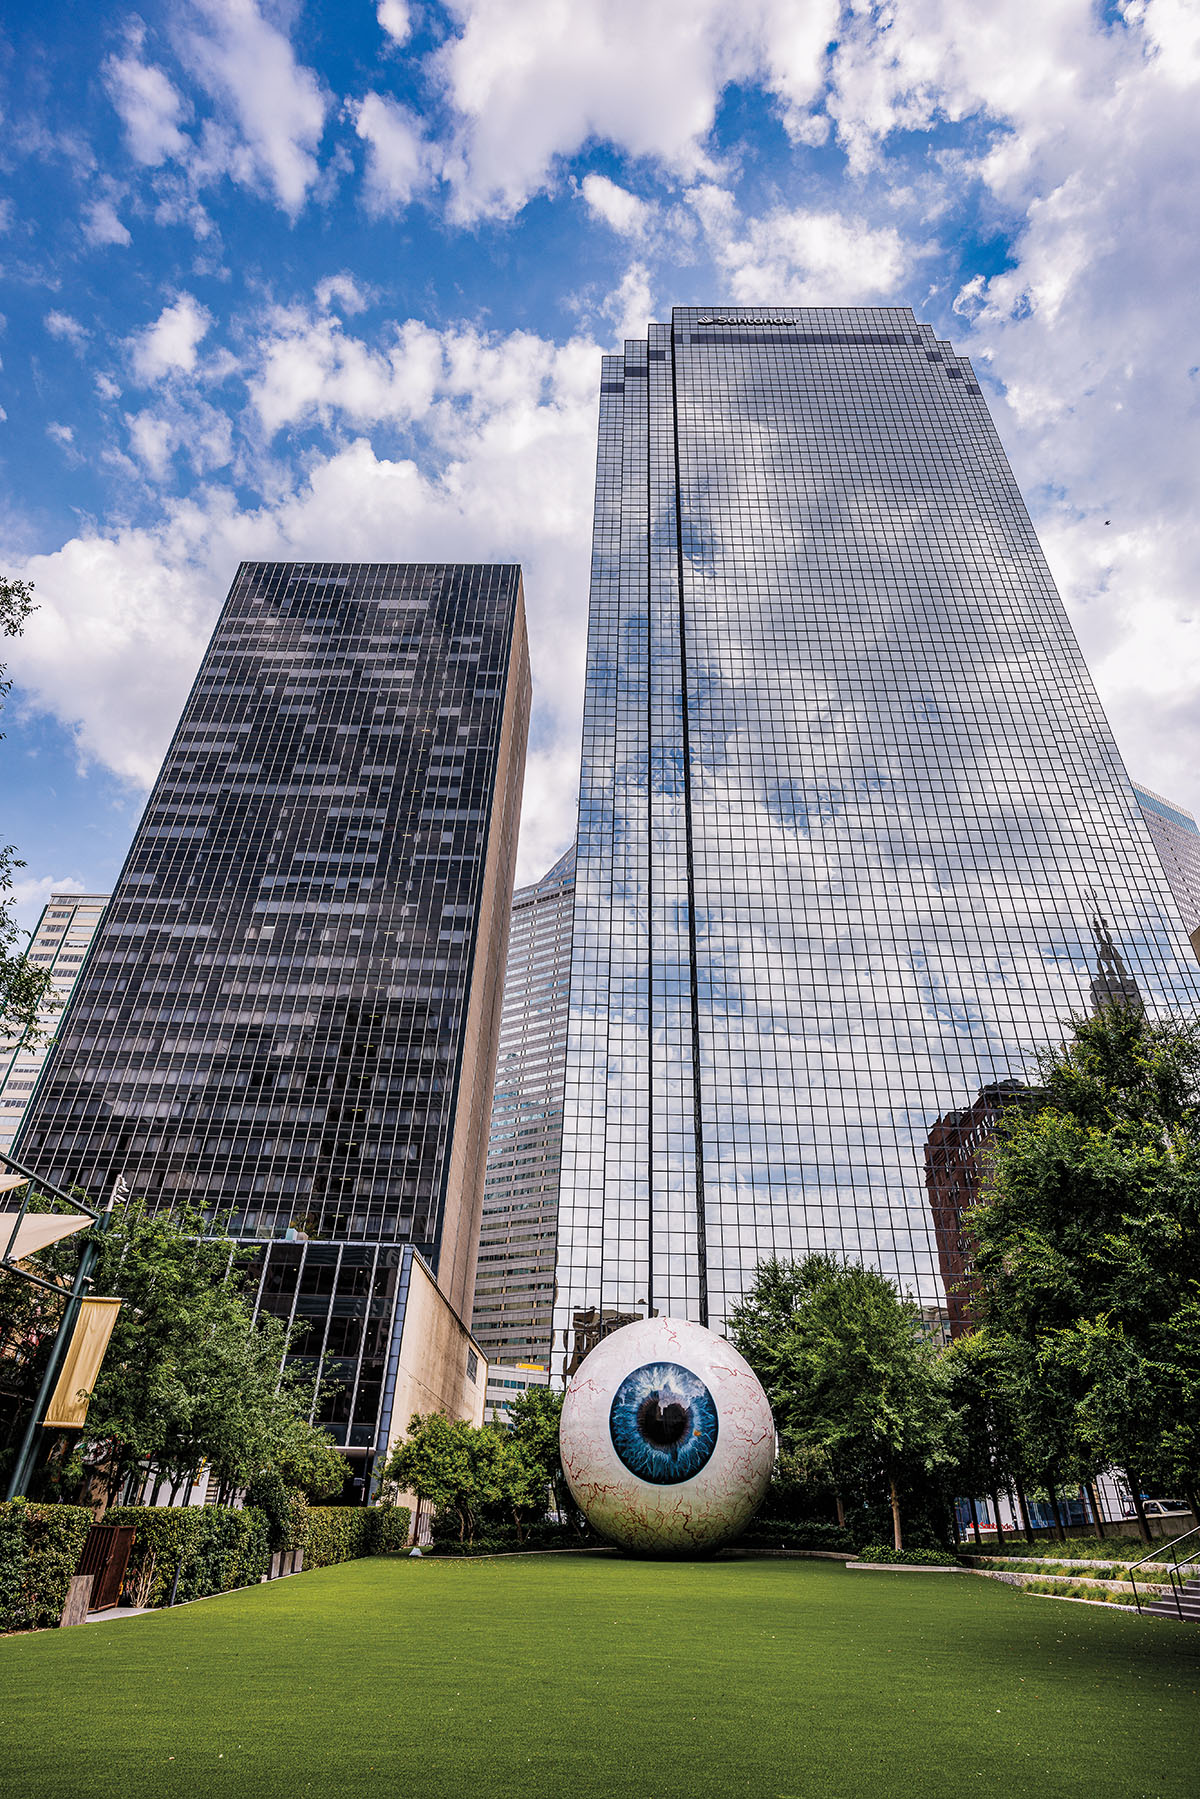 A large fiberglass eye sculpture on green grass beneath tall glass buildings